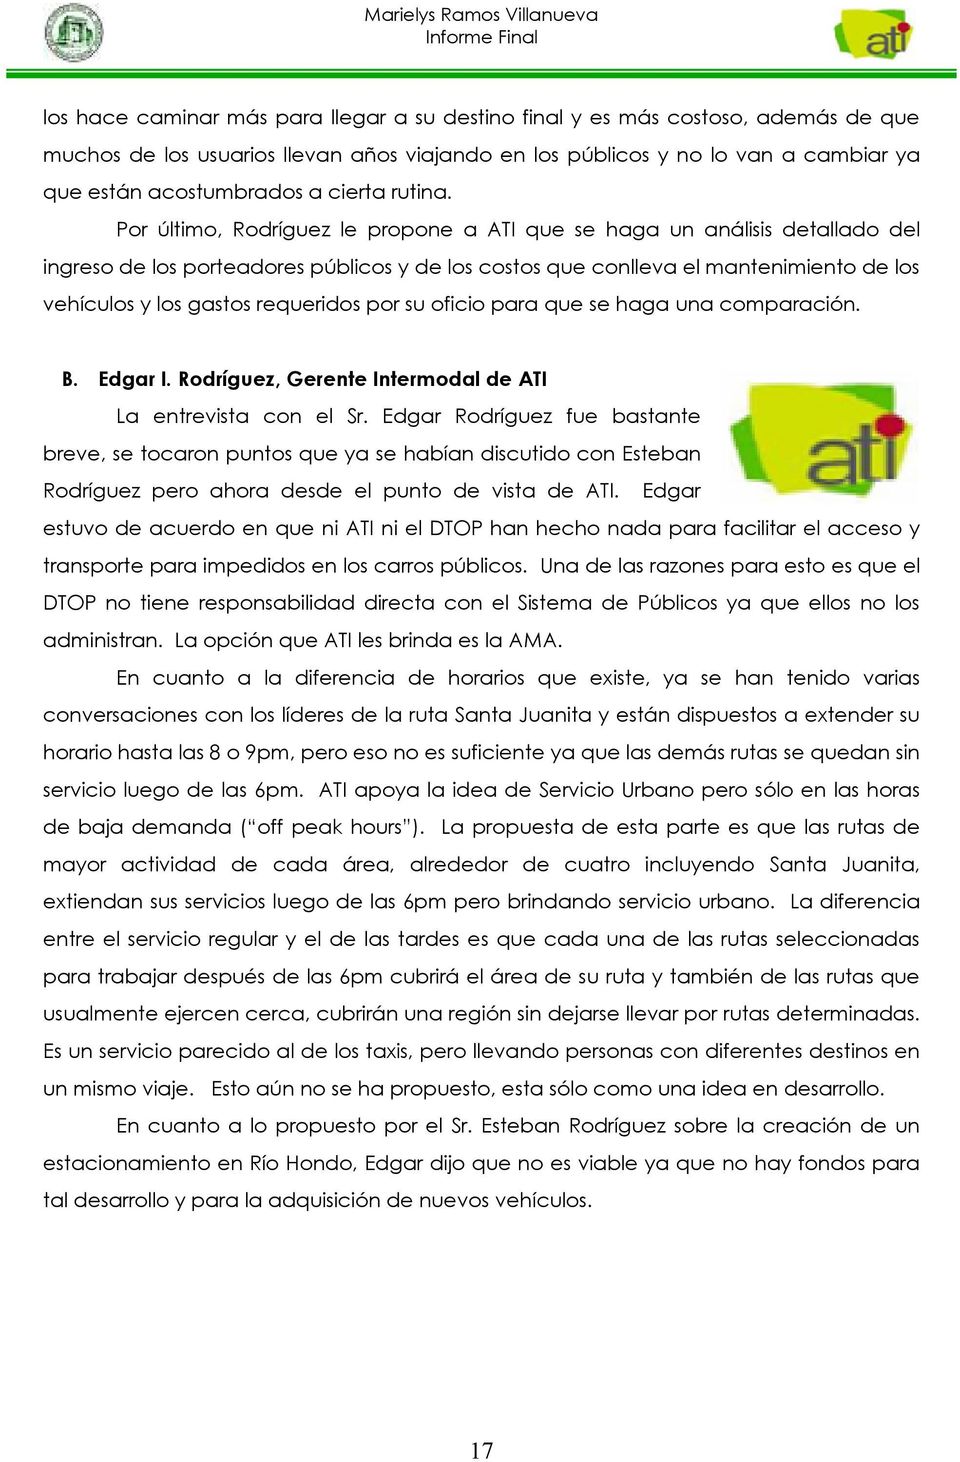 Por último, Rodríguez le propone a ATI que se haga un análisis detallado del ingreso de los porteadores públicos y de los costos que conlleva el mantenimiento de los vehículos y los gastos requeridos